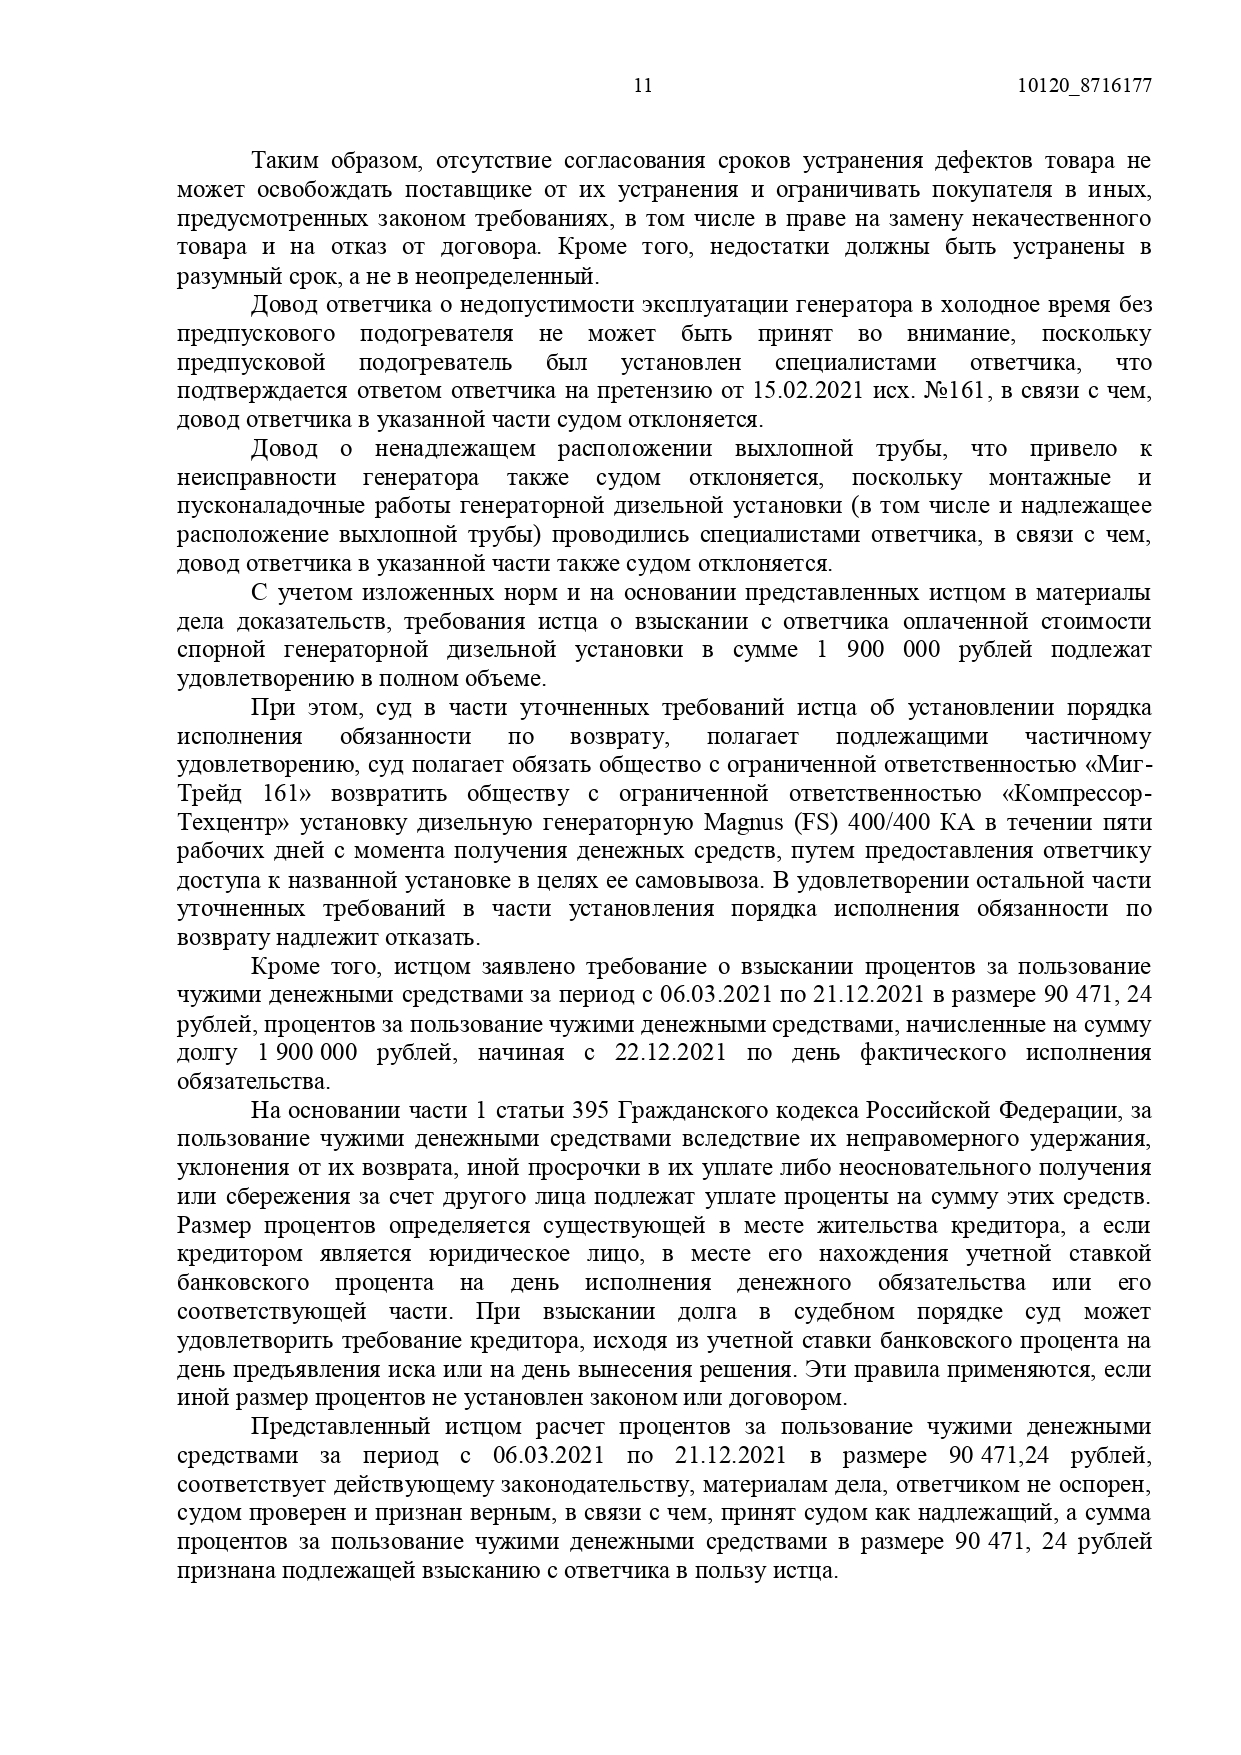 Арбитражный суд Ростовской области вынес решение по делу №А53-6305/2021